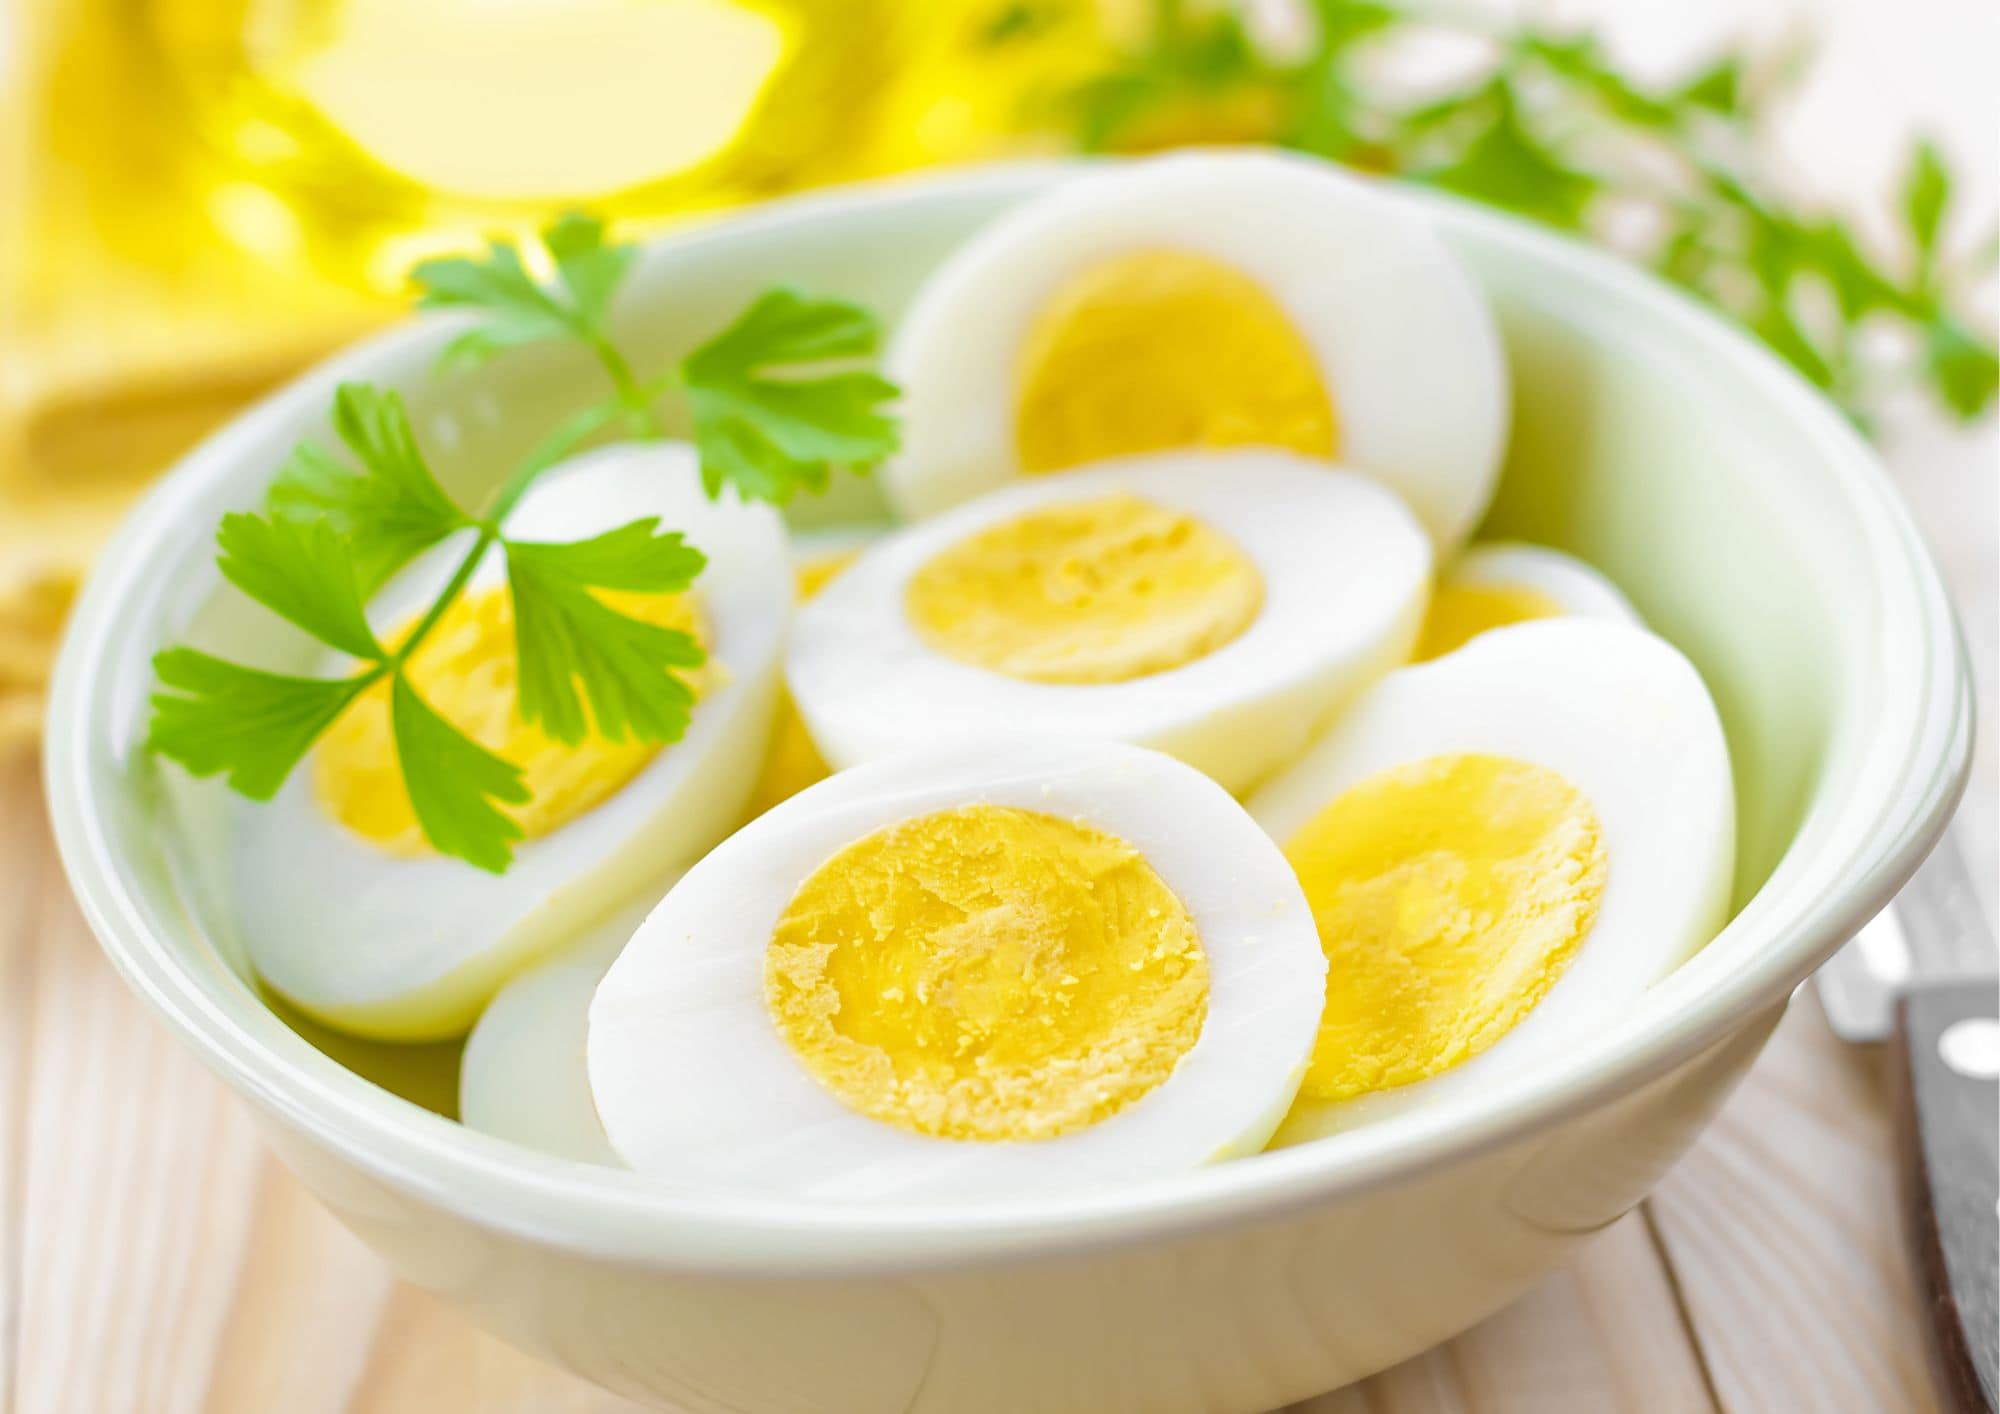 Mat med mye kalorier: Egg